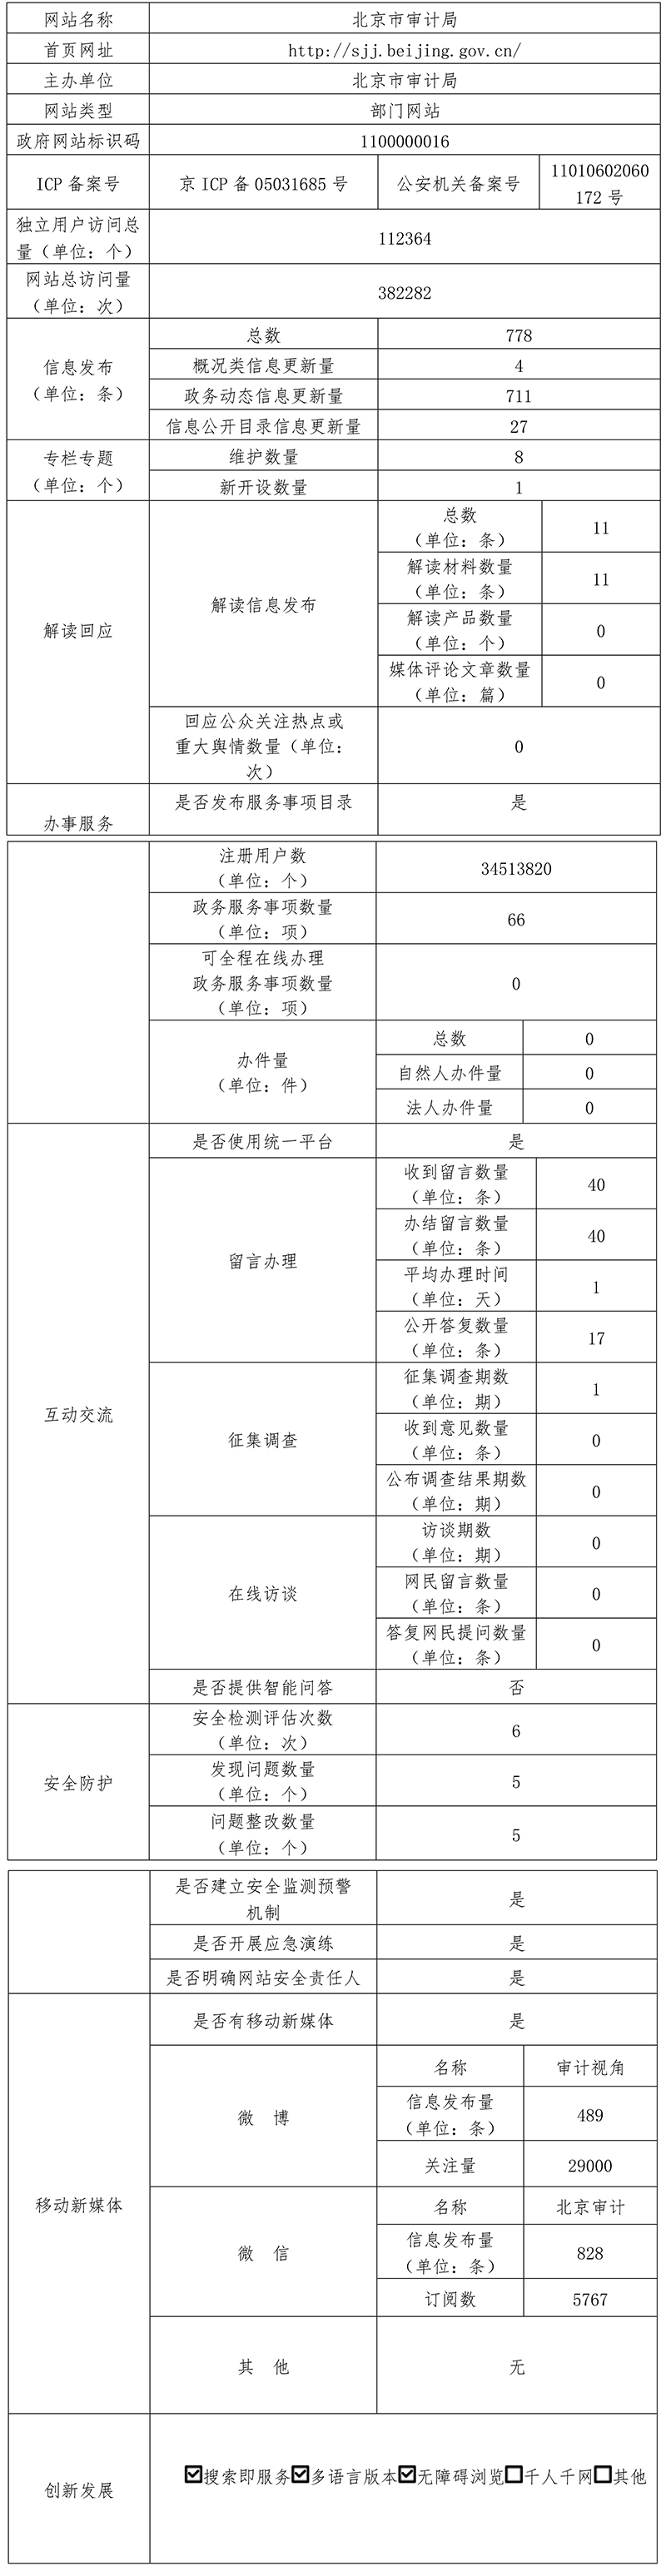 北京市審計局2021年政府網站年度工作報表